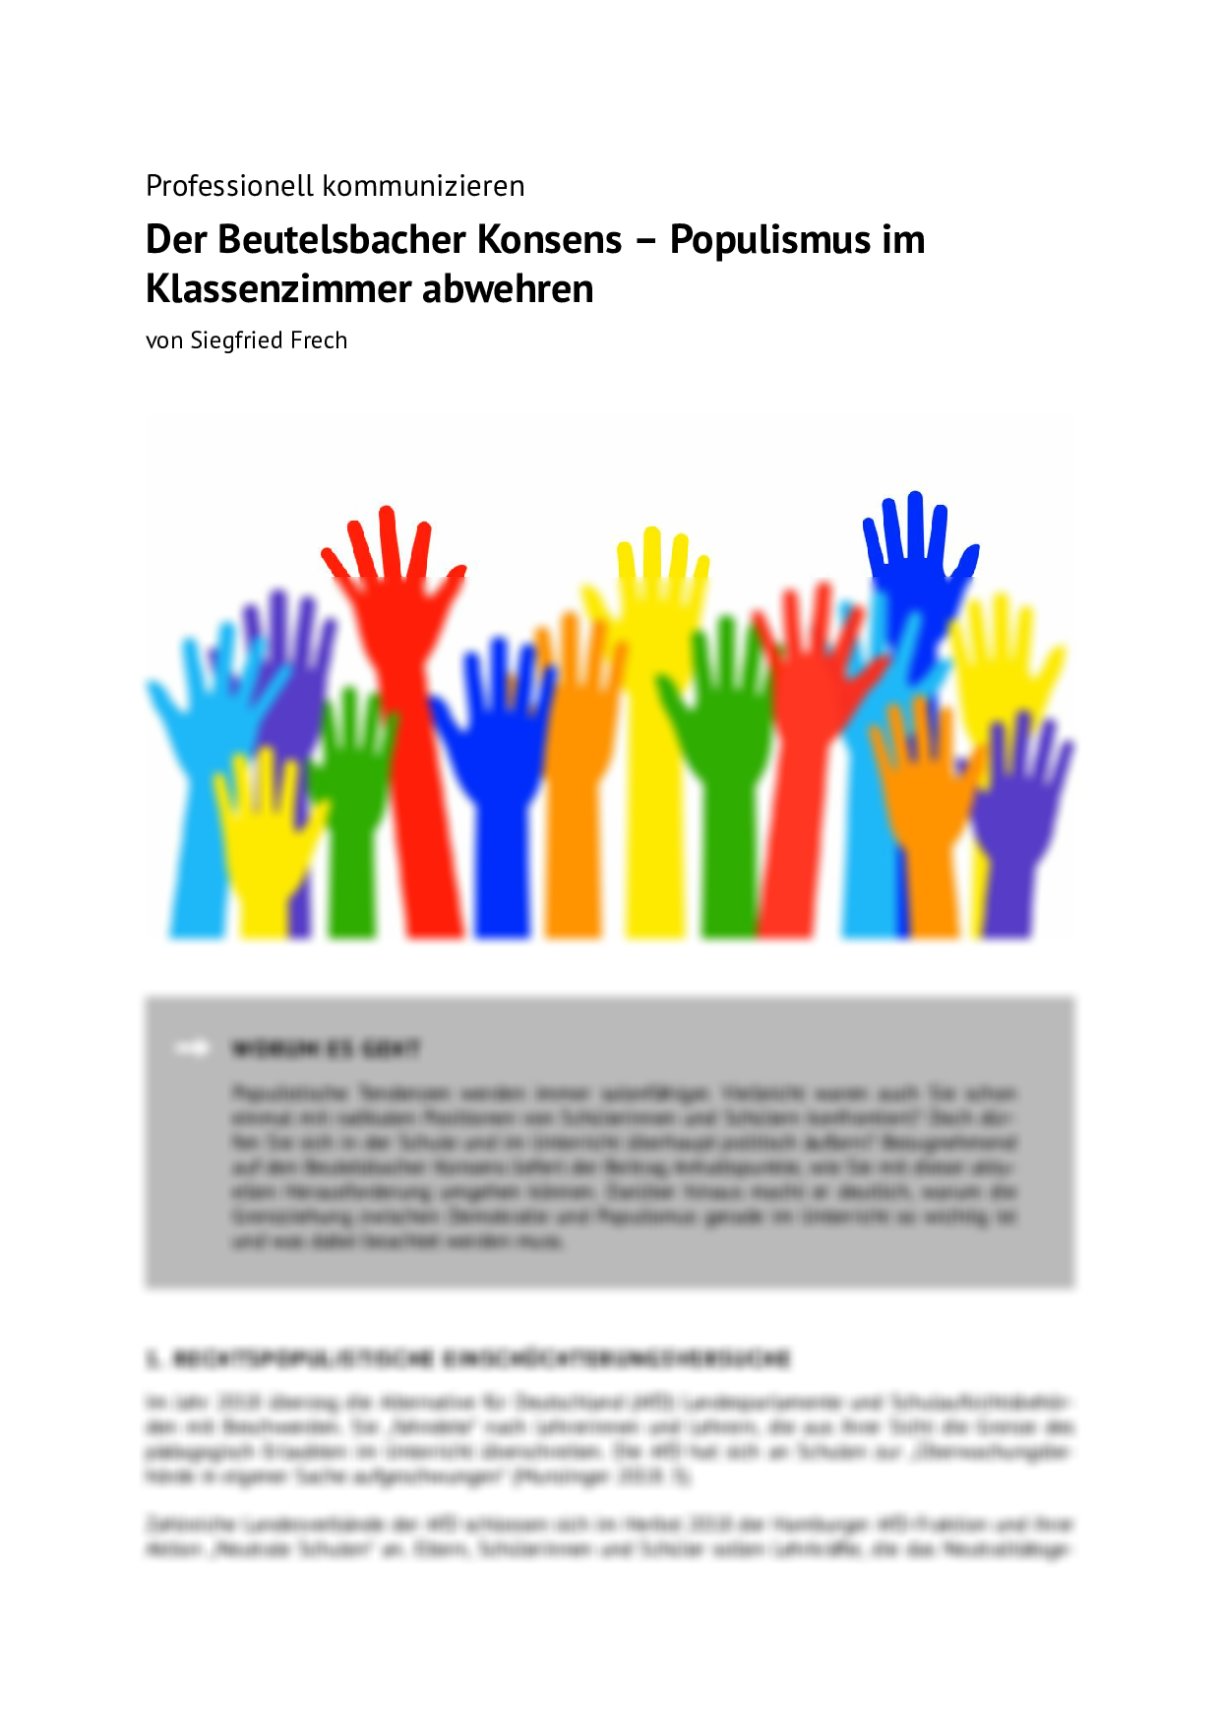 Der Beutelsbacher Konsens – Populismus im Klassenzimmer abwehren - Seite 1